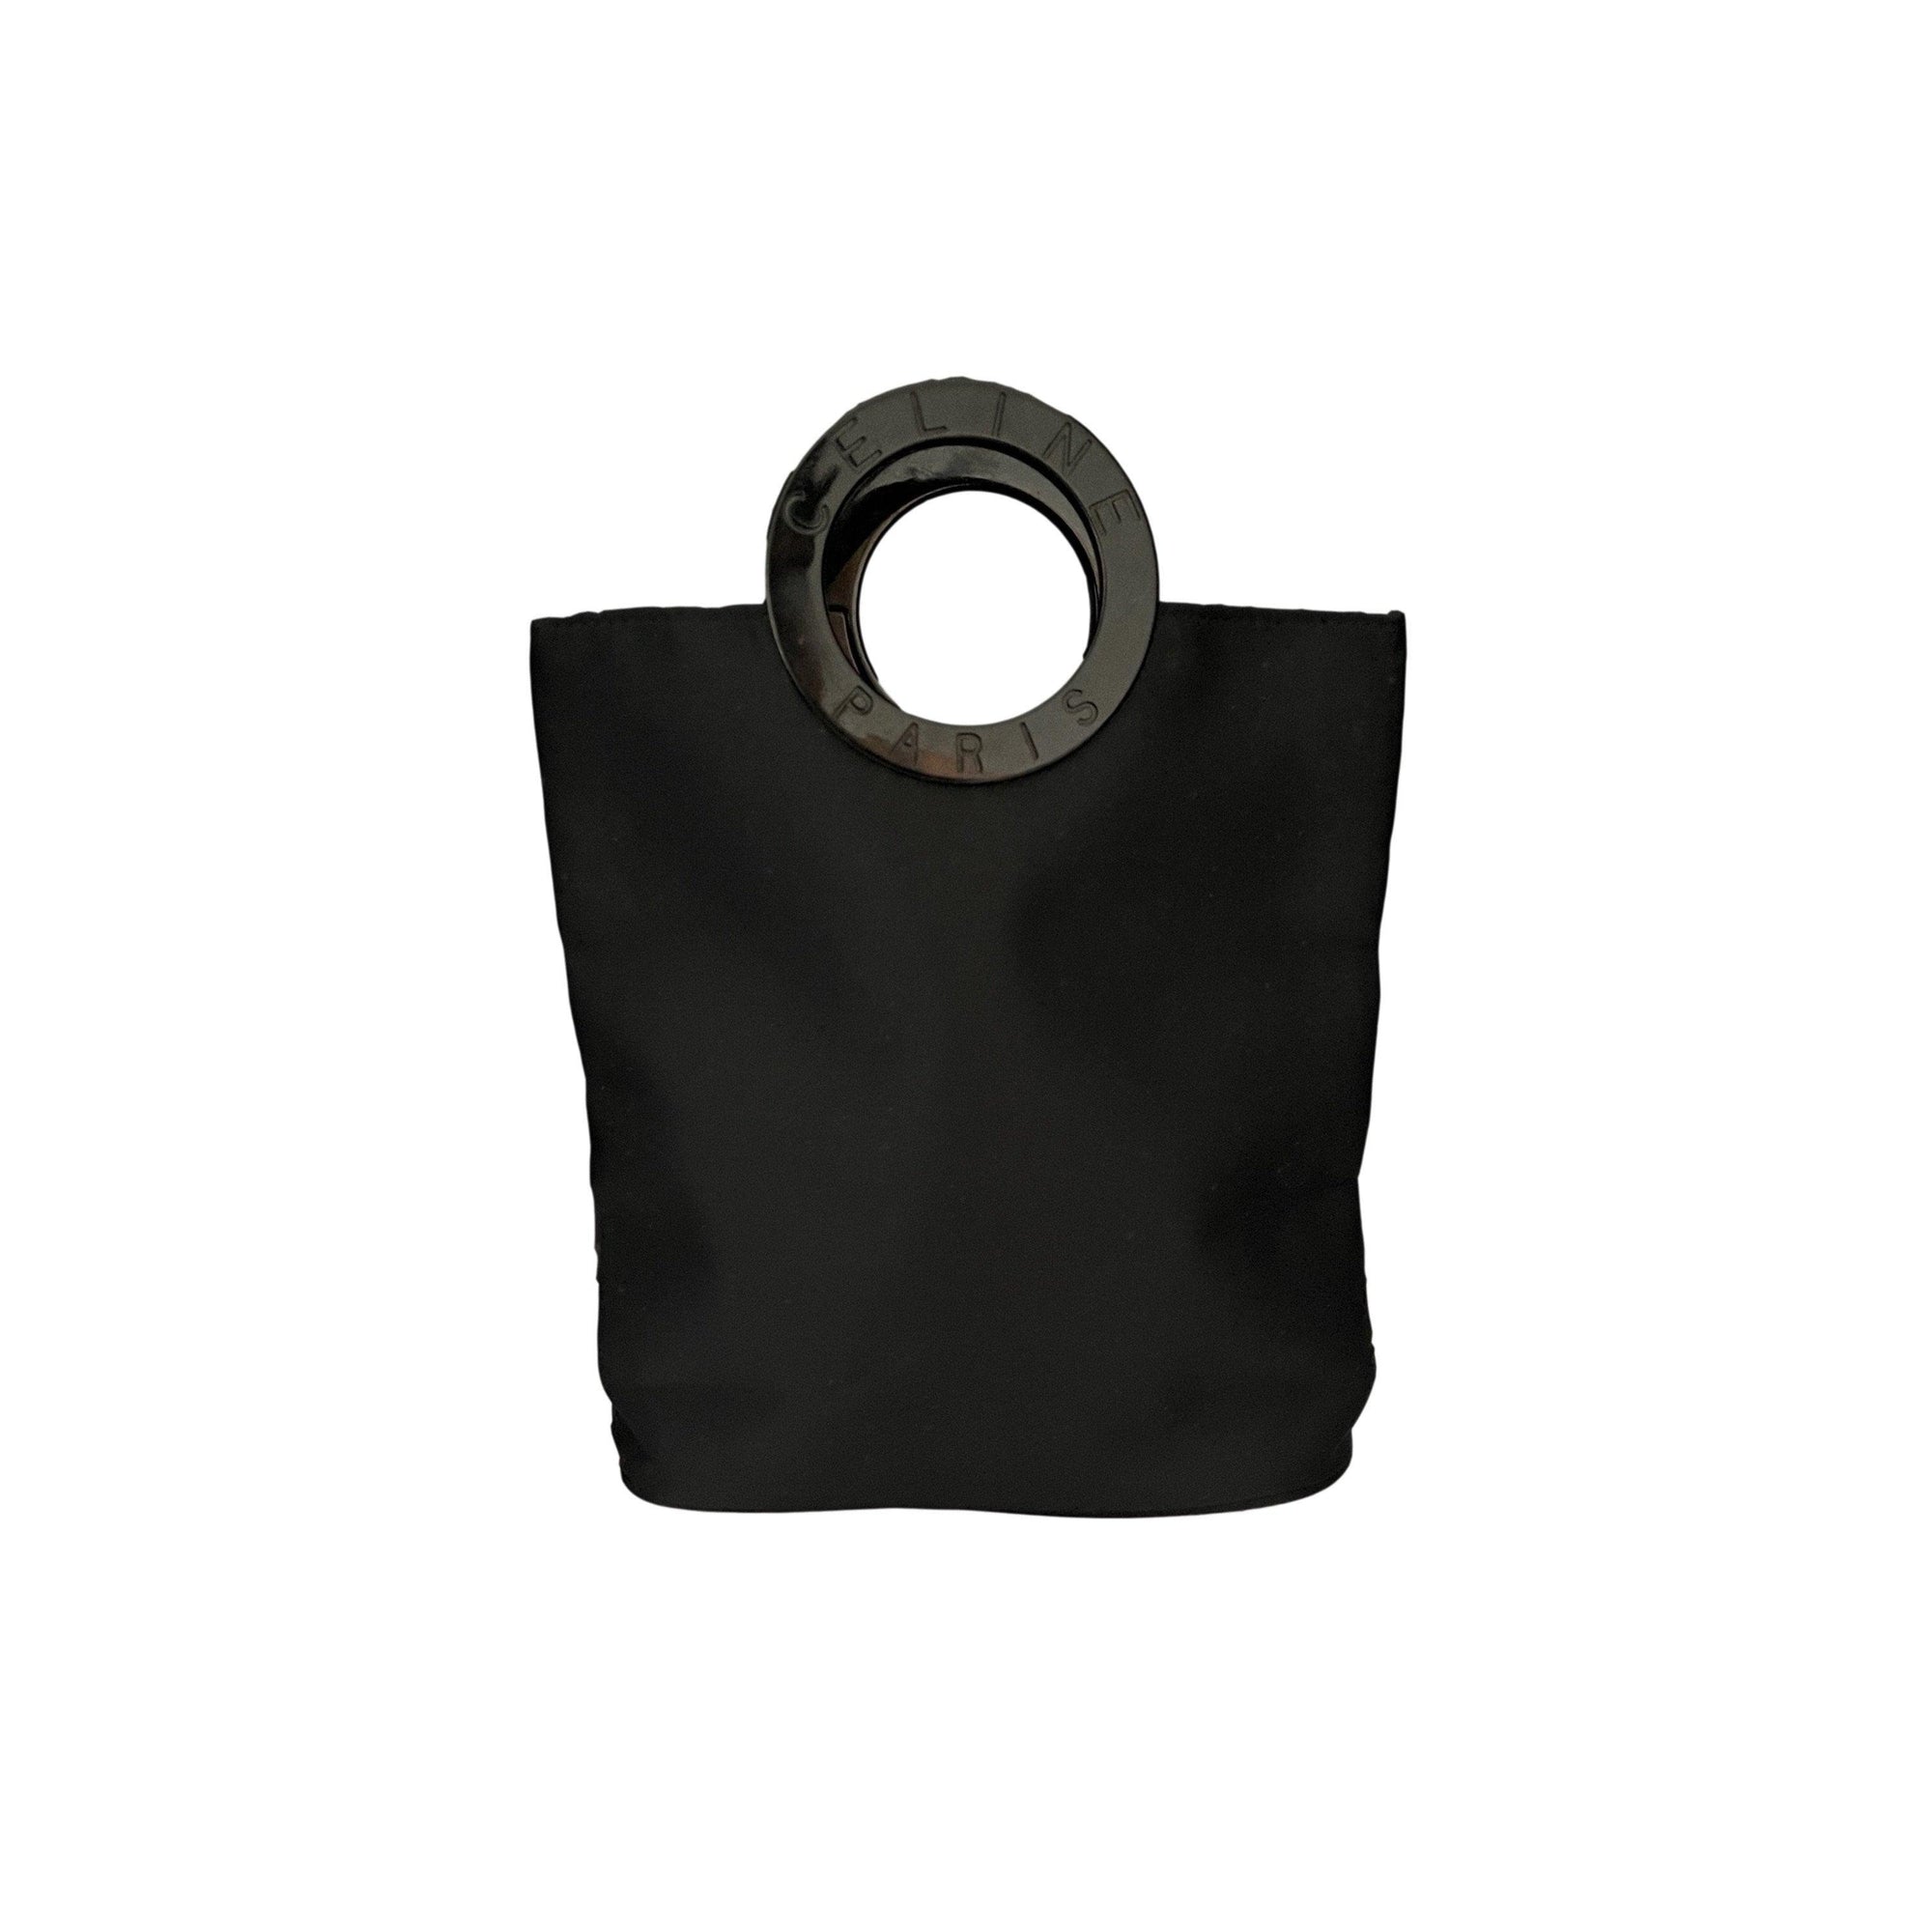 Celine Black Nylon Mini Top Handle Bag - Handbags